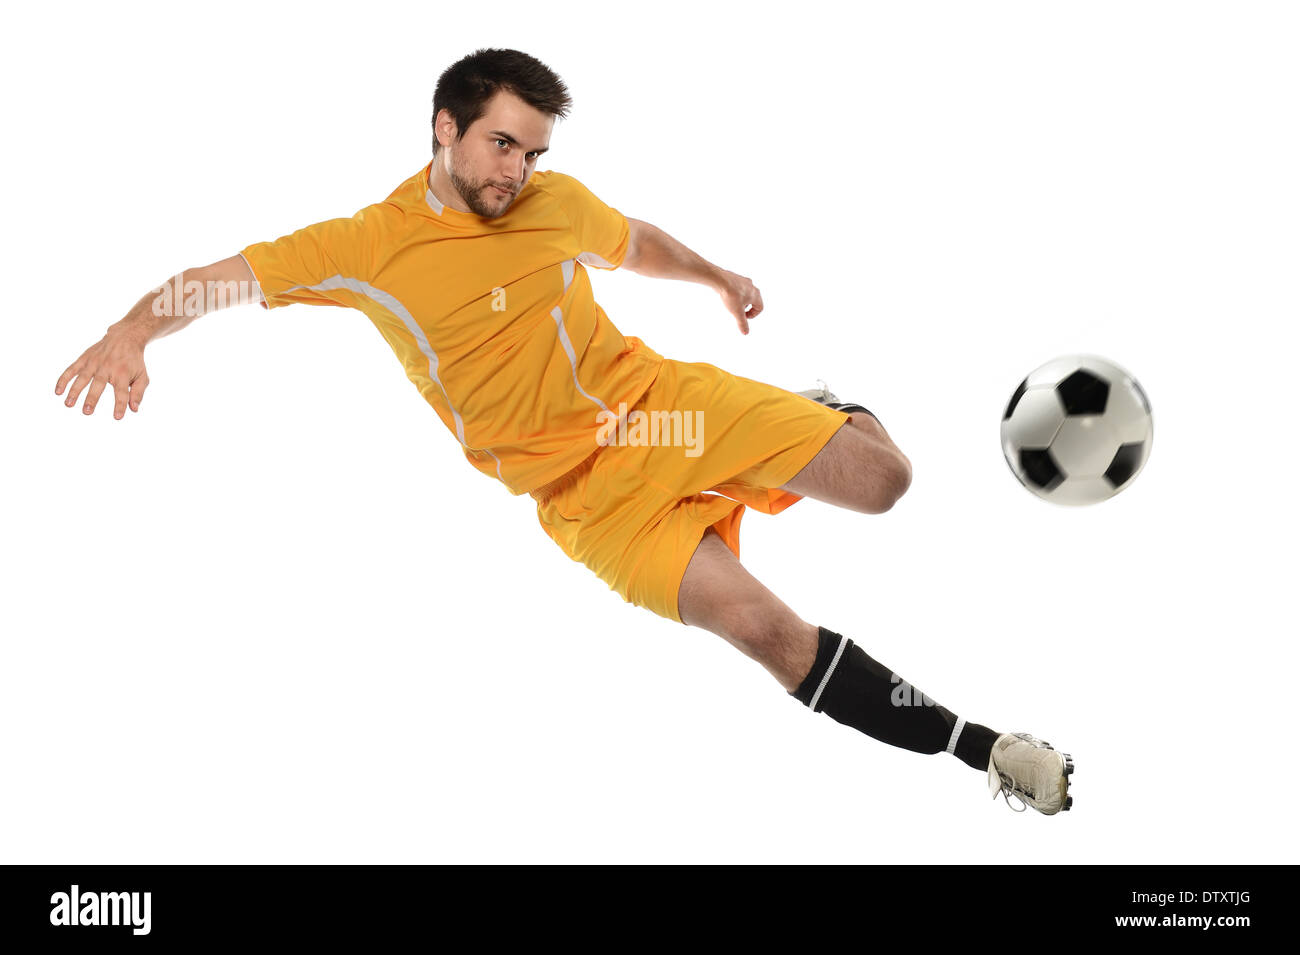 Jeune joueur de foot ball kicking isolé sur fond blanc Banque D'Images